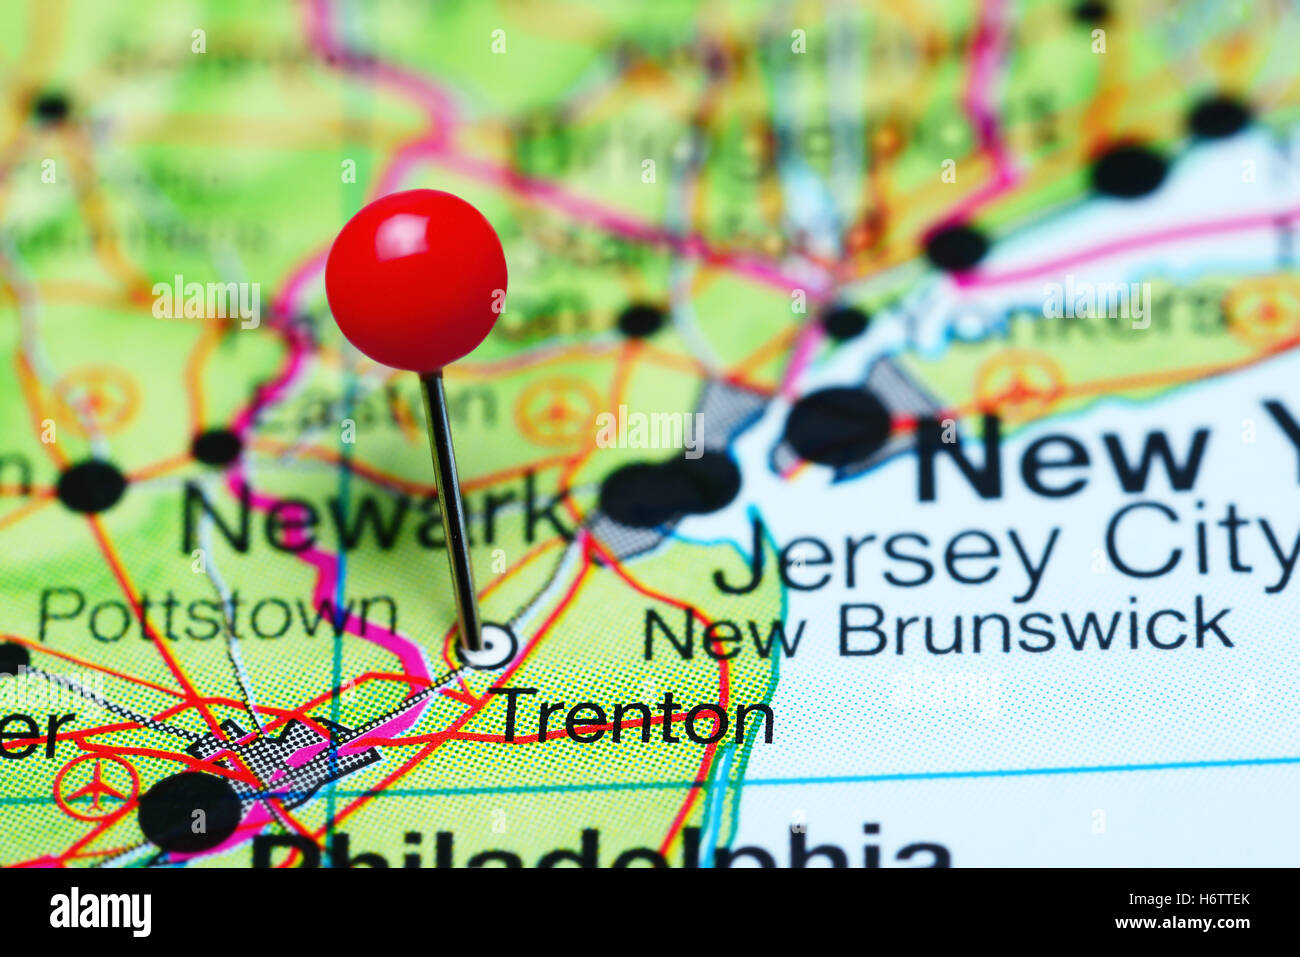 Trenton anclado en un mapa de Nueva Jersey, EE.UU. Foto de stock